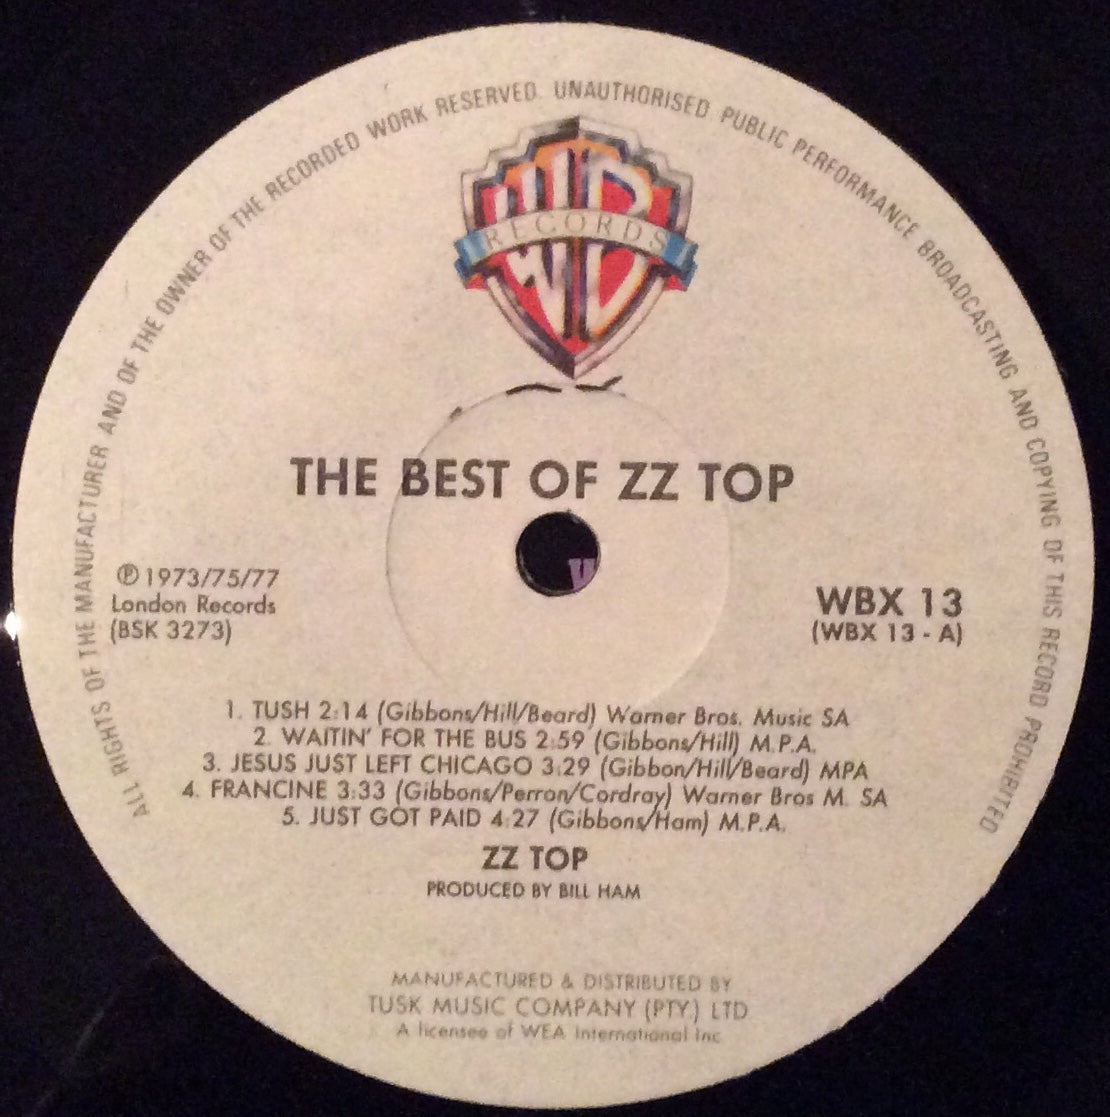 ZZ Top - The Best Of ZZ Top